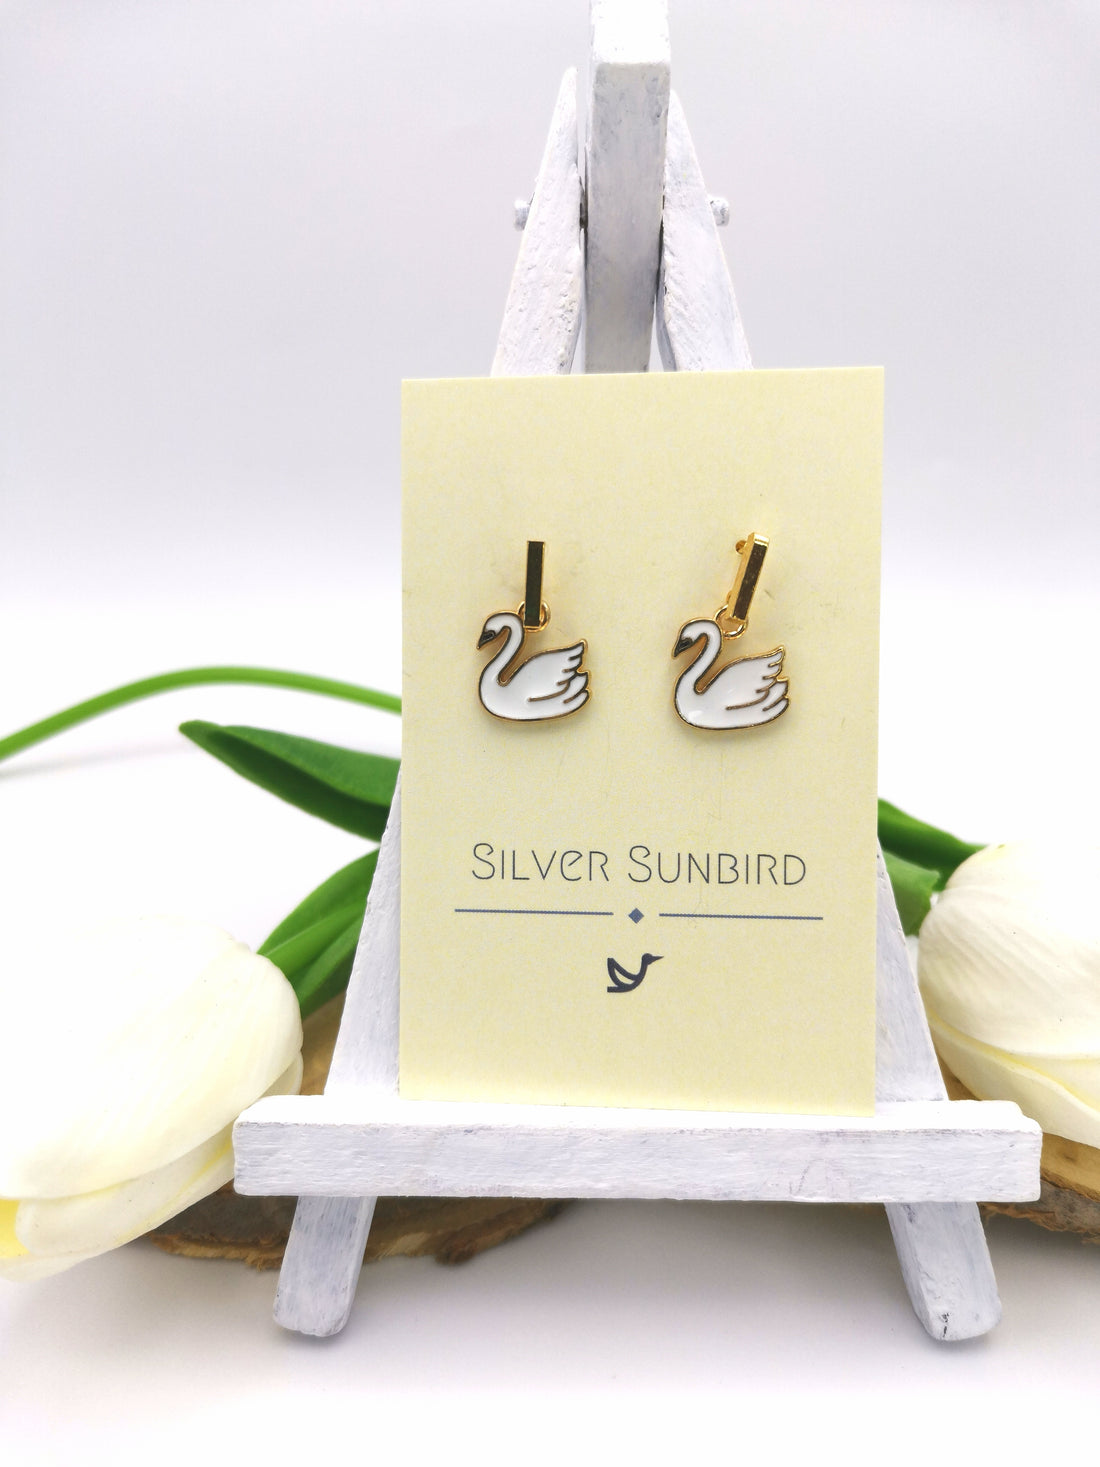 Graceful Swan Earrings - Silver Sunbird animal earrings